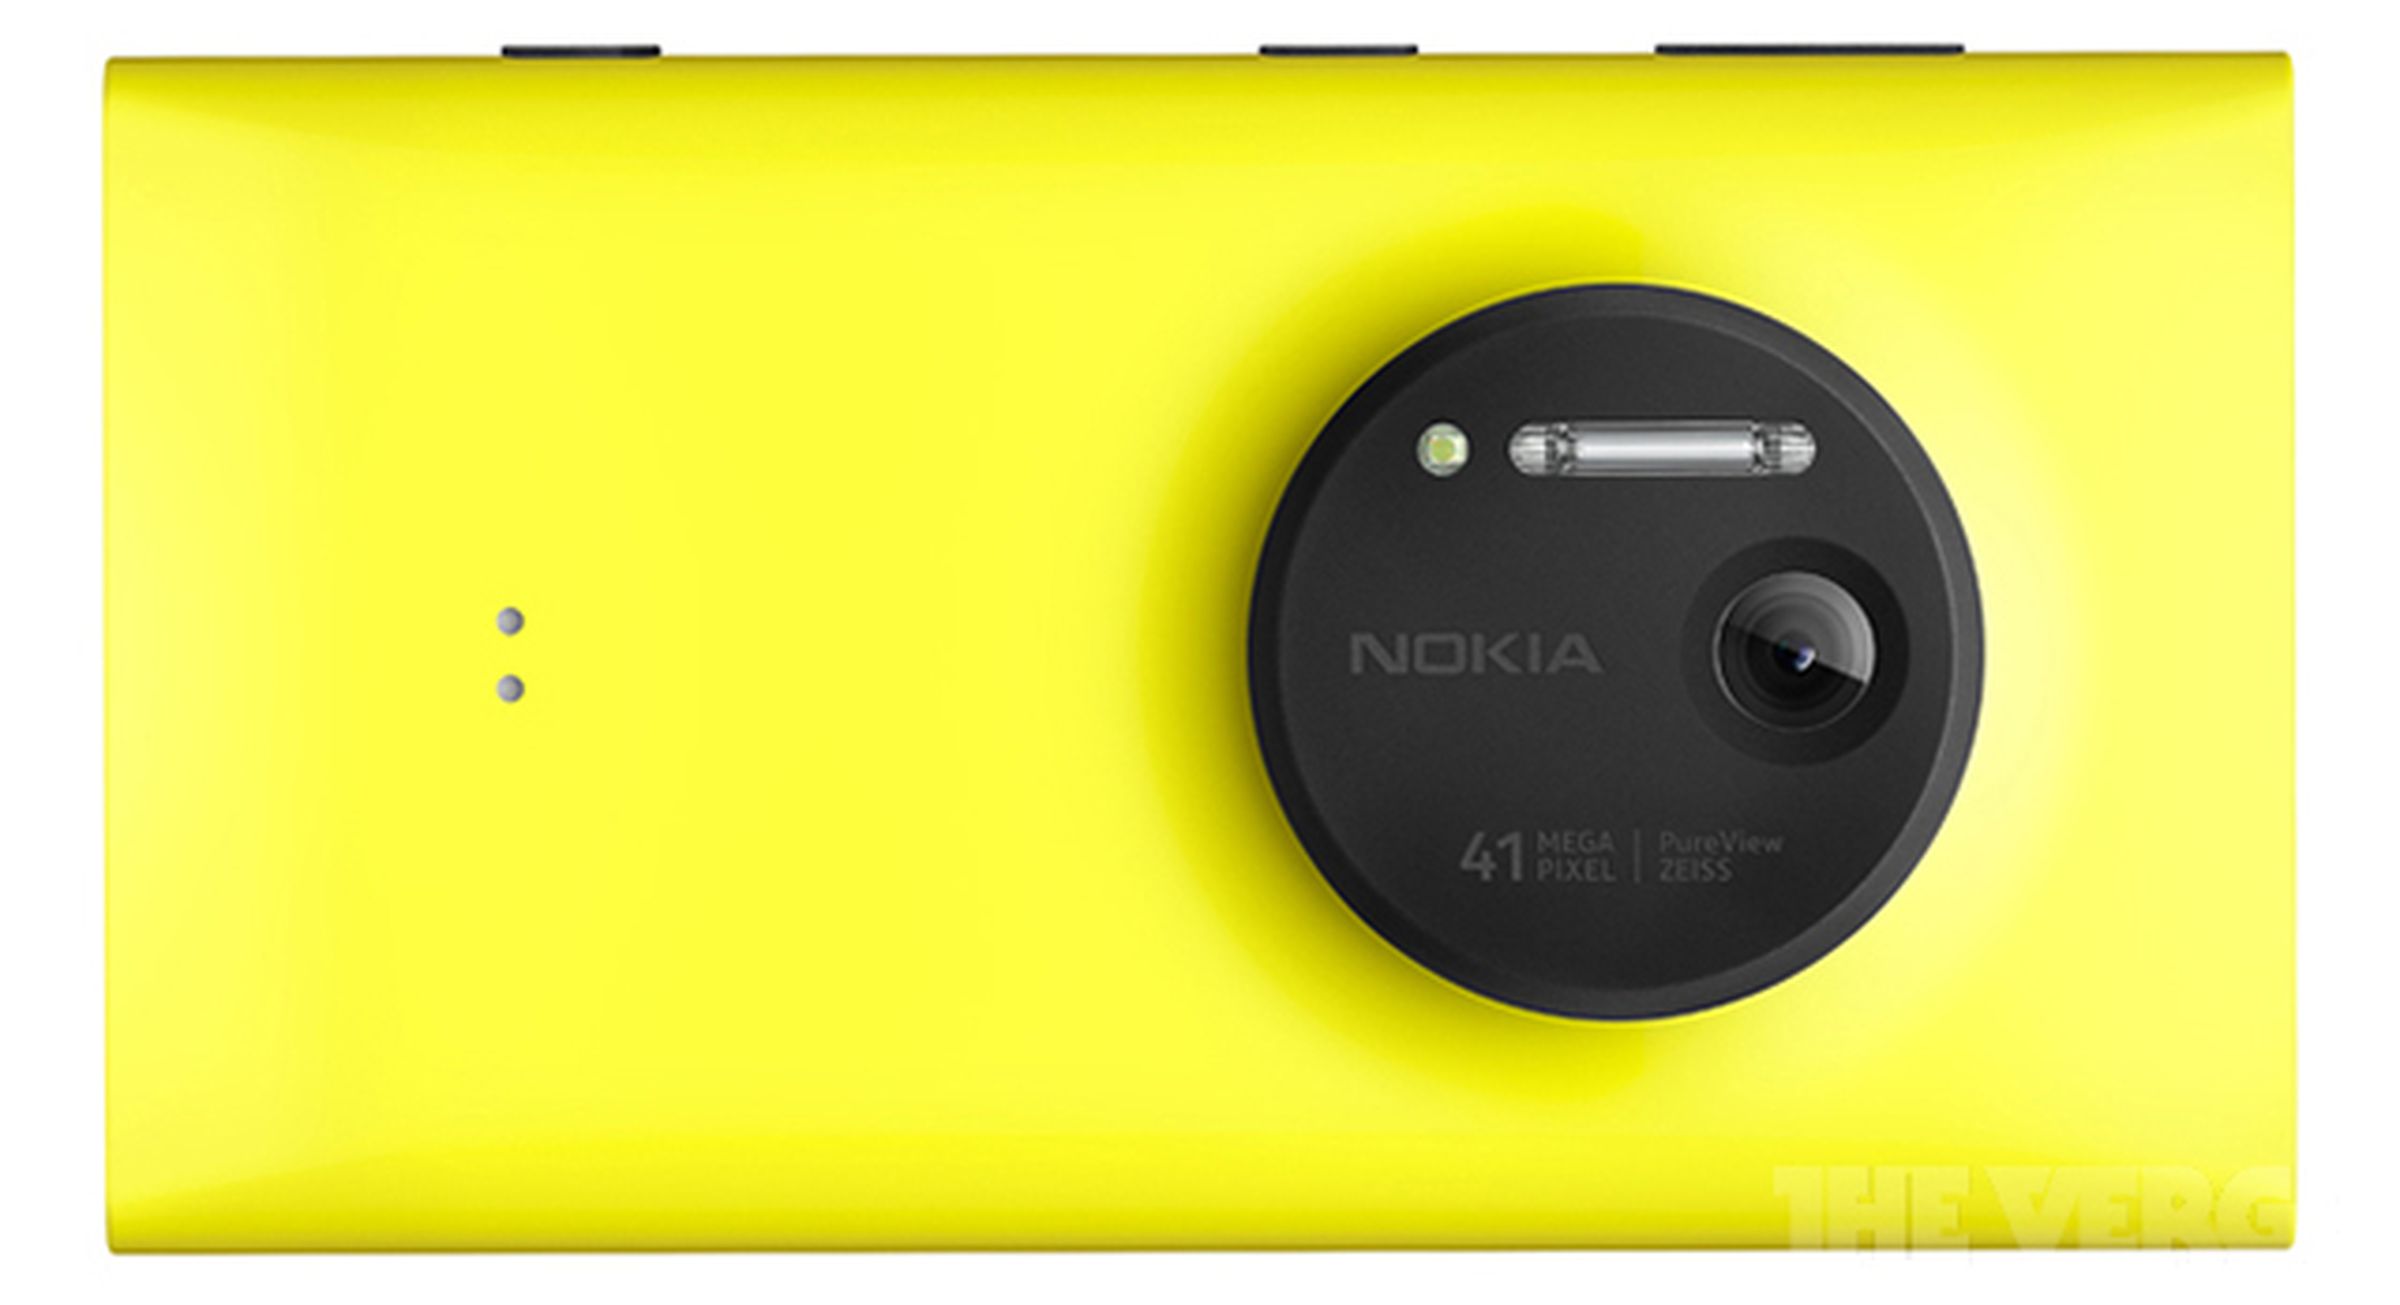 Nokia Lumia 1020 press photos